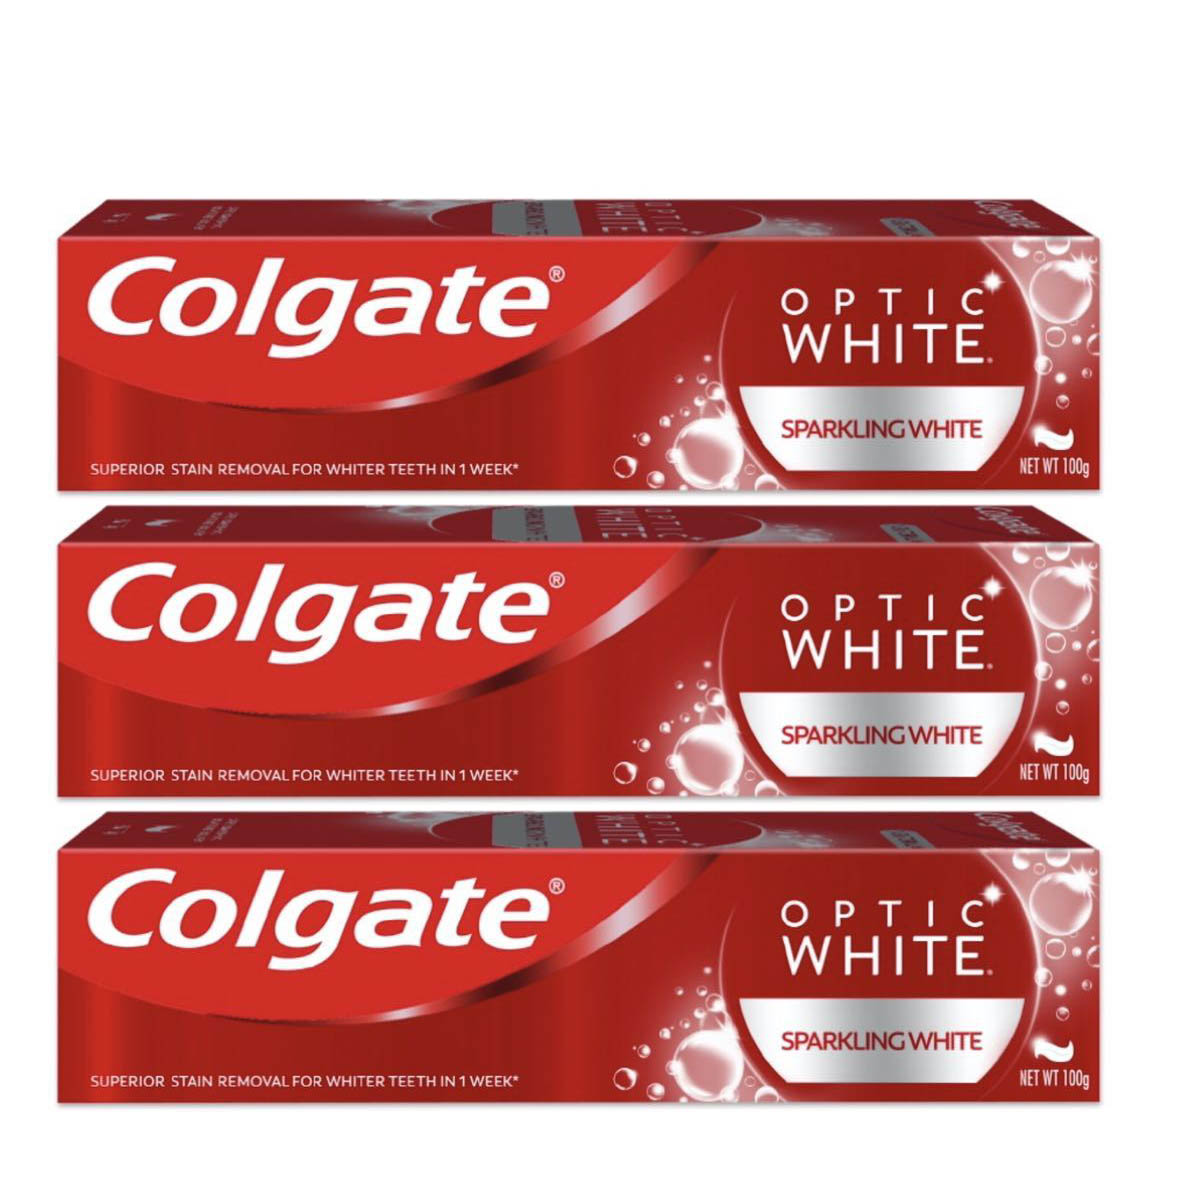 限定版 Colgate Optic White コルゲート オプティックホワイトSparkling スパークリング ホワイト ホワイトニング 歯磨き粉  ハミガキコ お得な 3個 セット 100g 美白 歯が命 白い歯